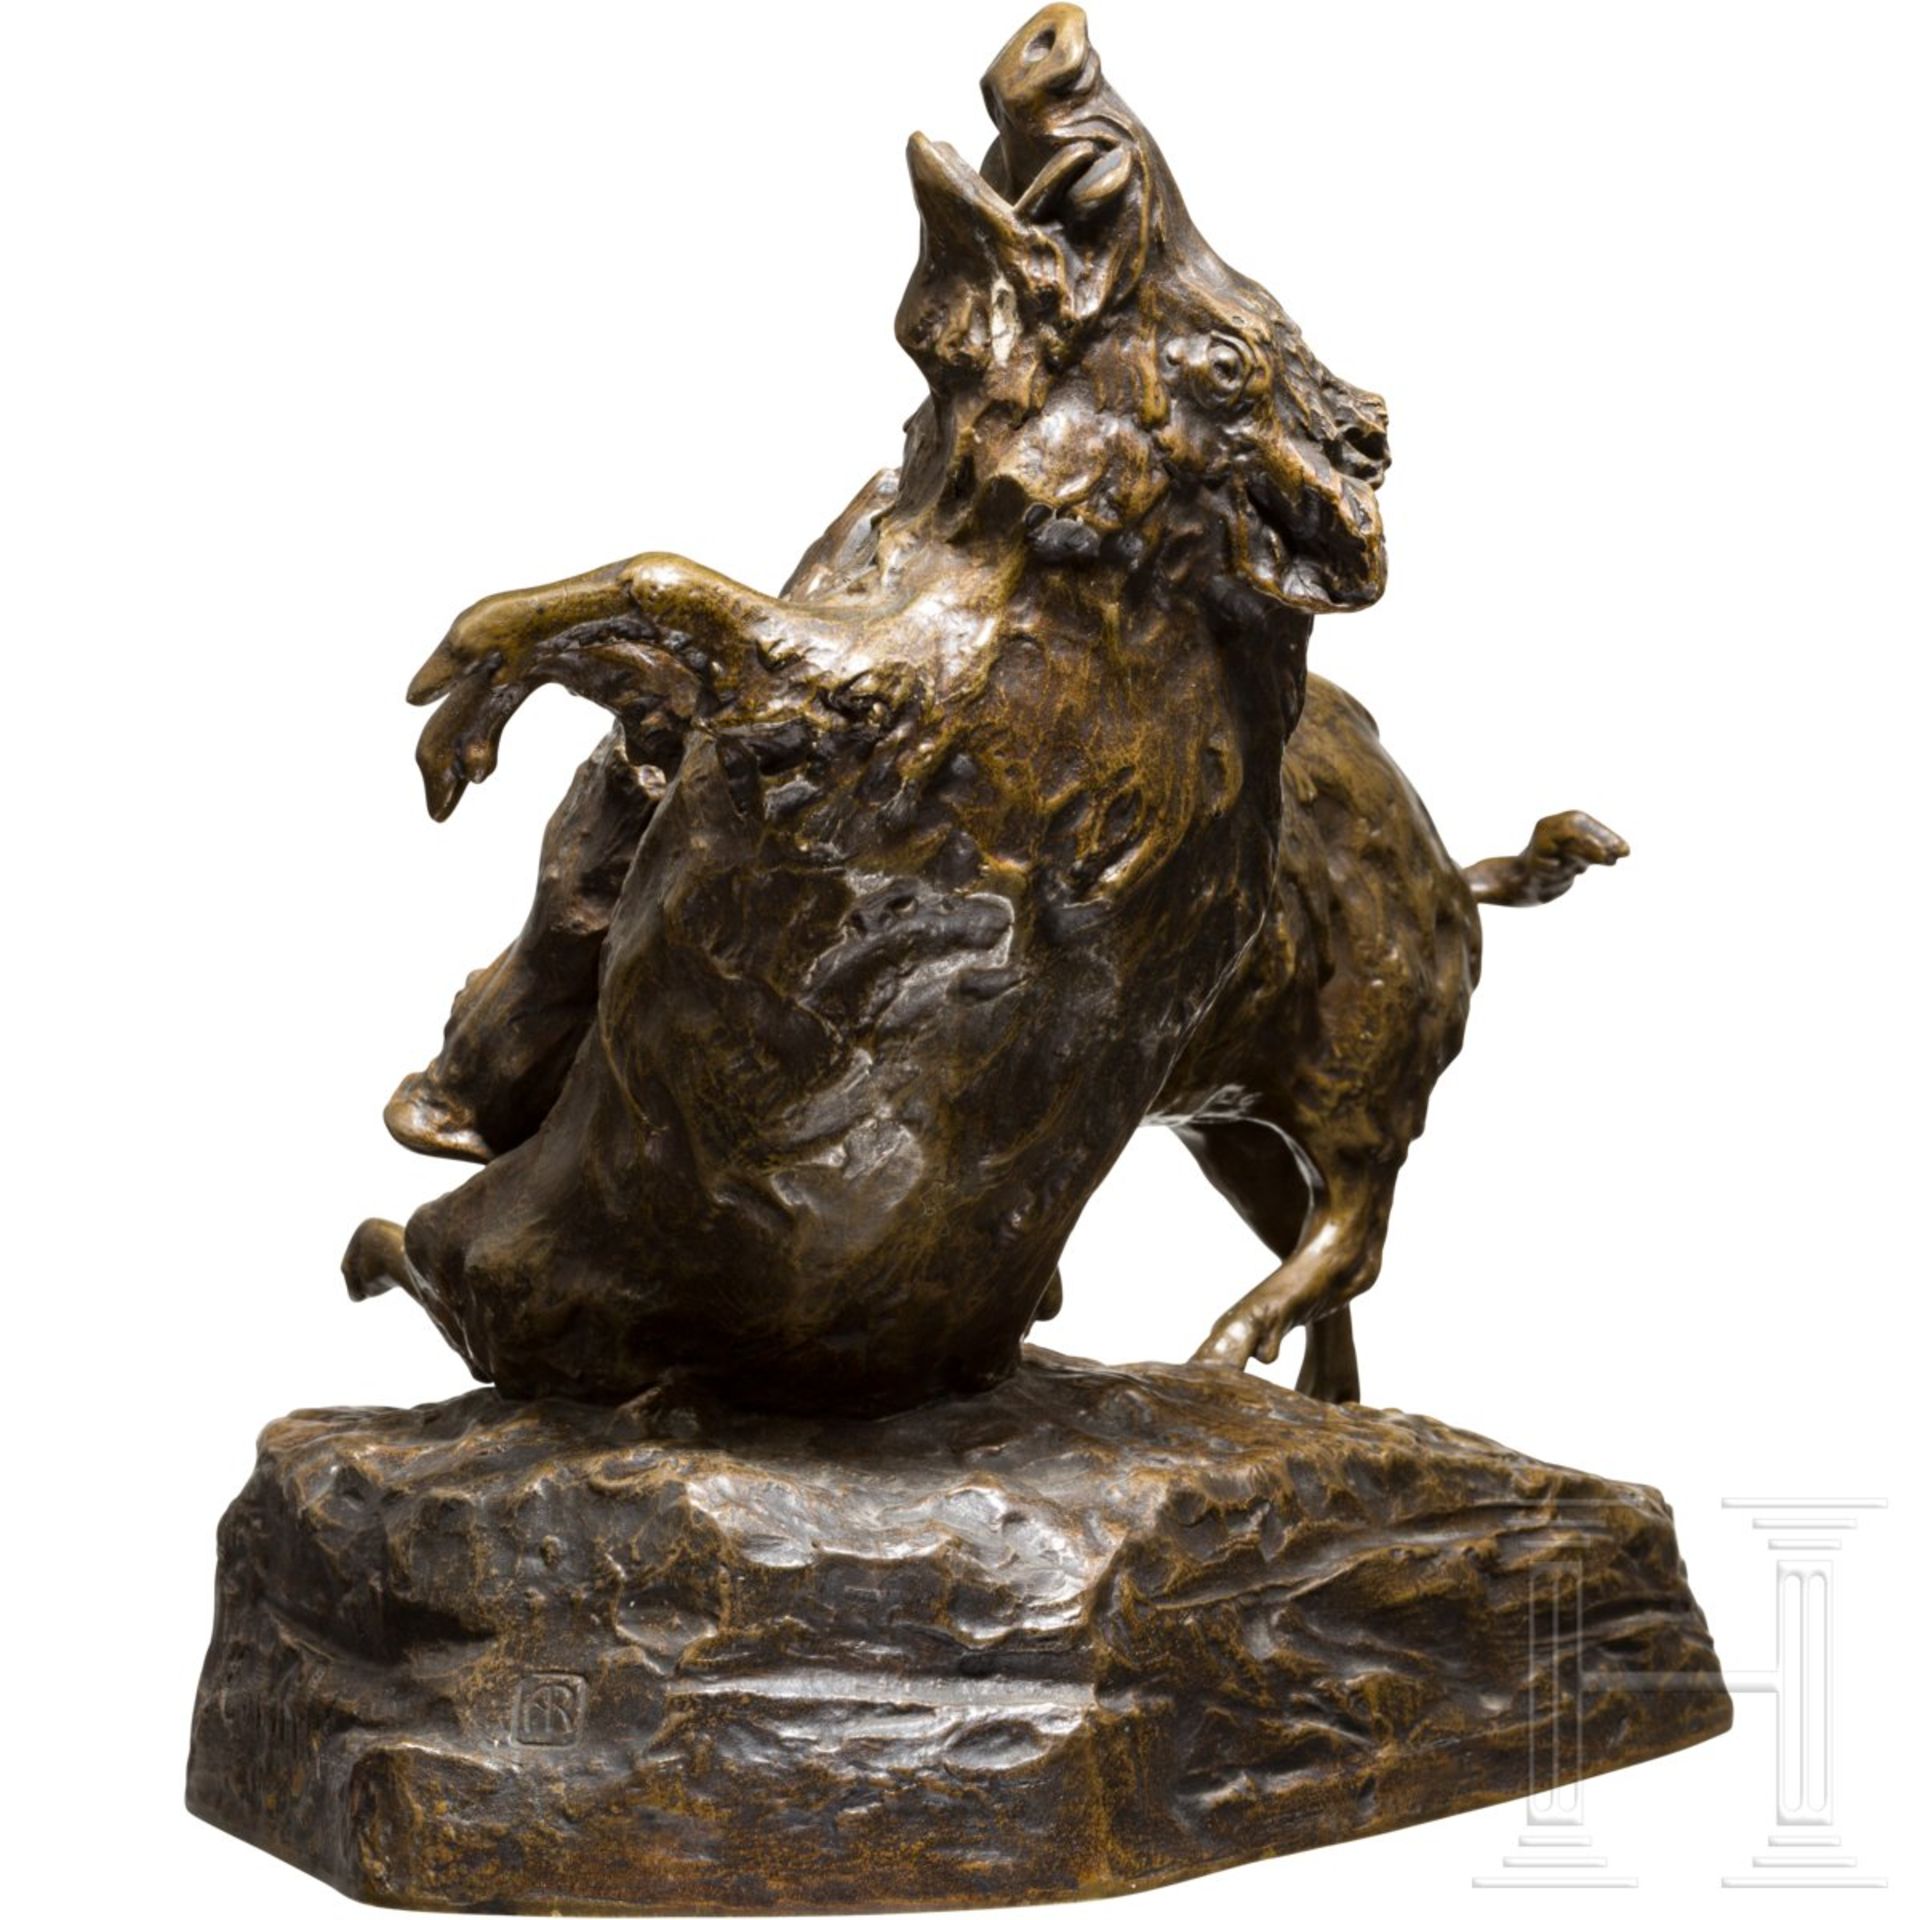 Friedrich Gornik (1877 - 1943) - Bronzeskulptur "Kämpfende Keiler" - Image 2 of 4